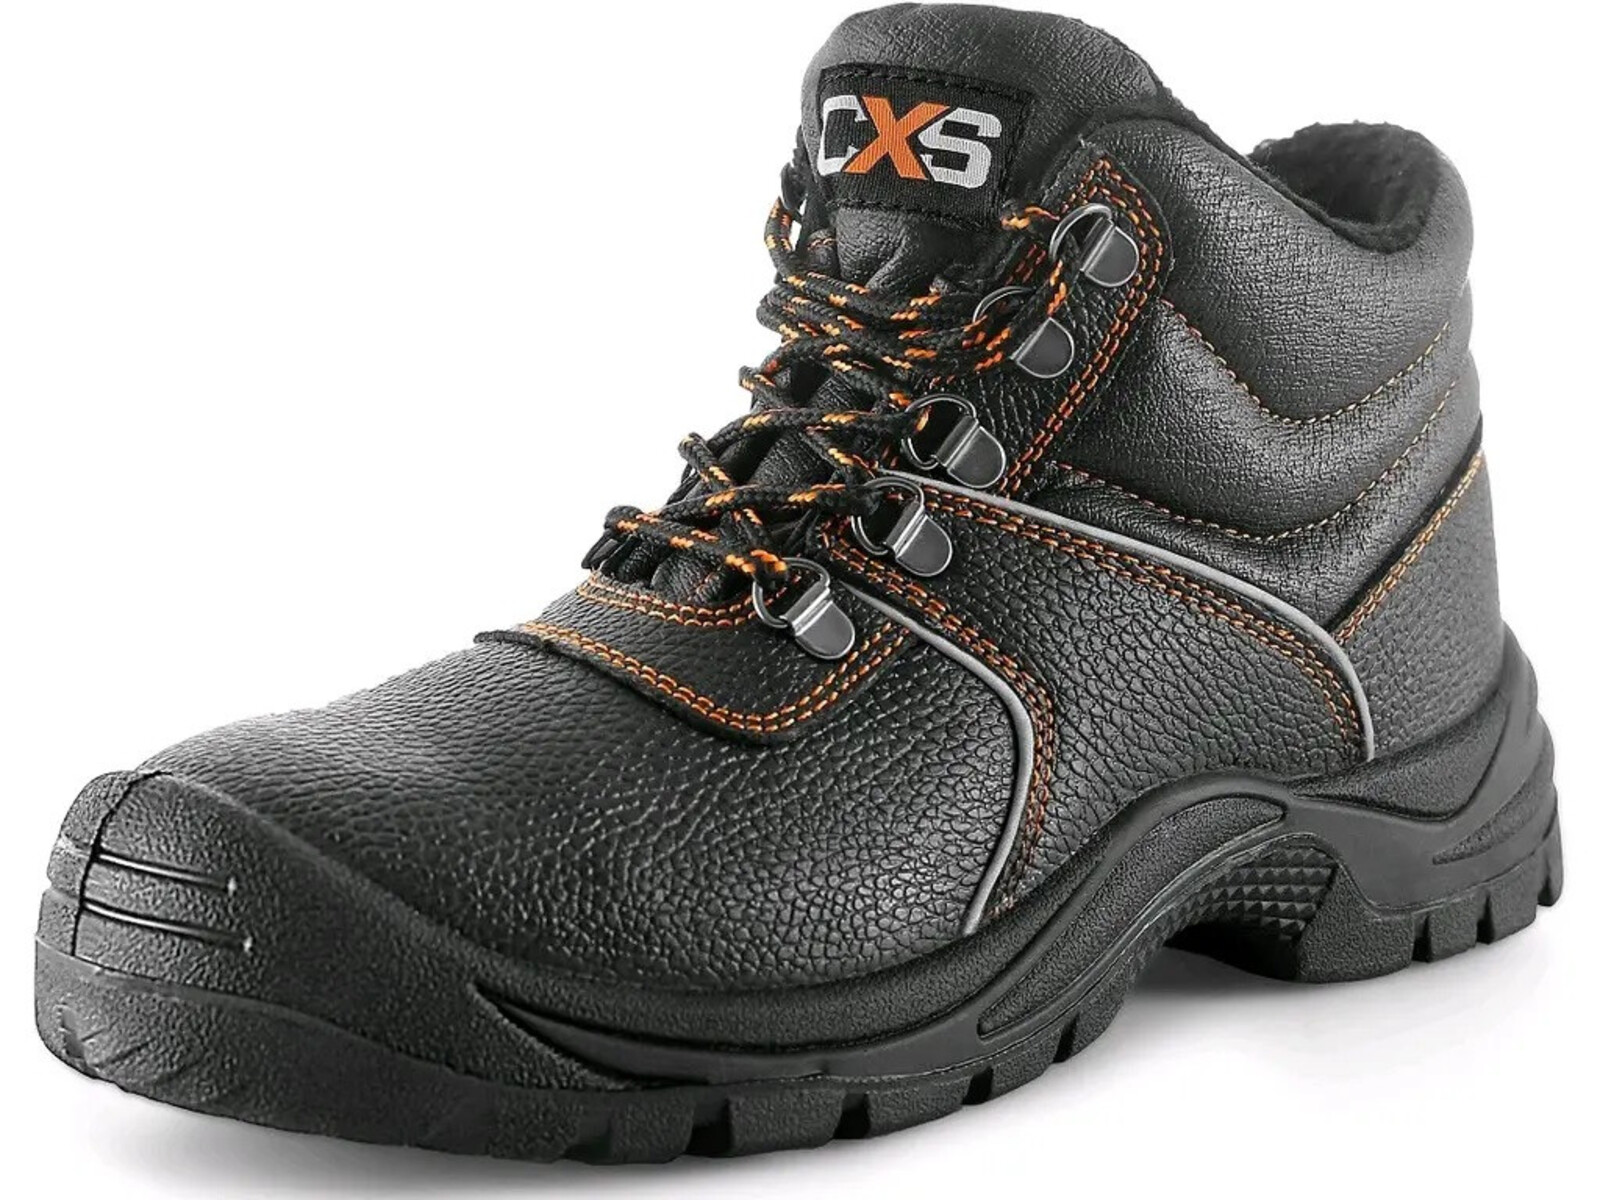 Zimná bezpečnostná členková obuv CXS Stone Apatit Winter S3 SRC - veľkosť: 40, farba: čierna/oranžová